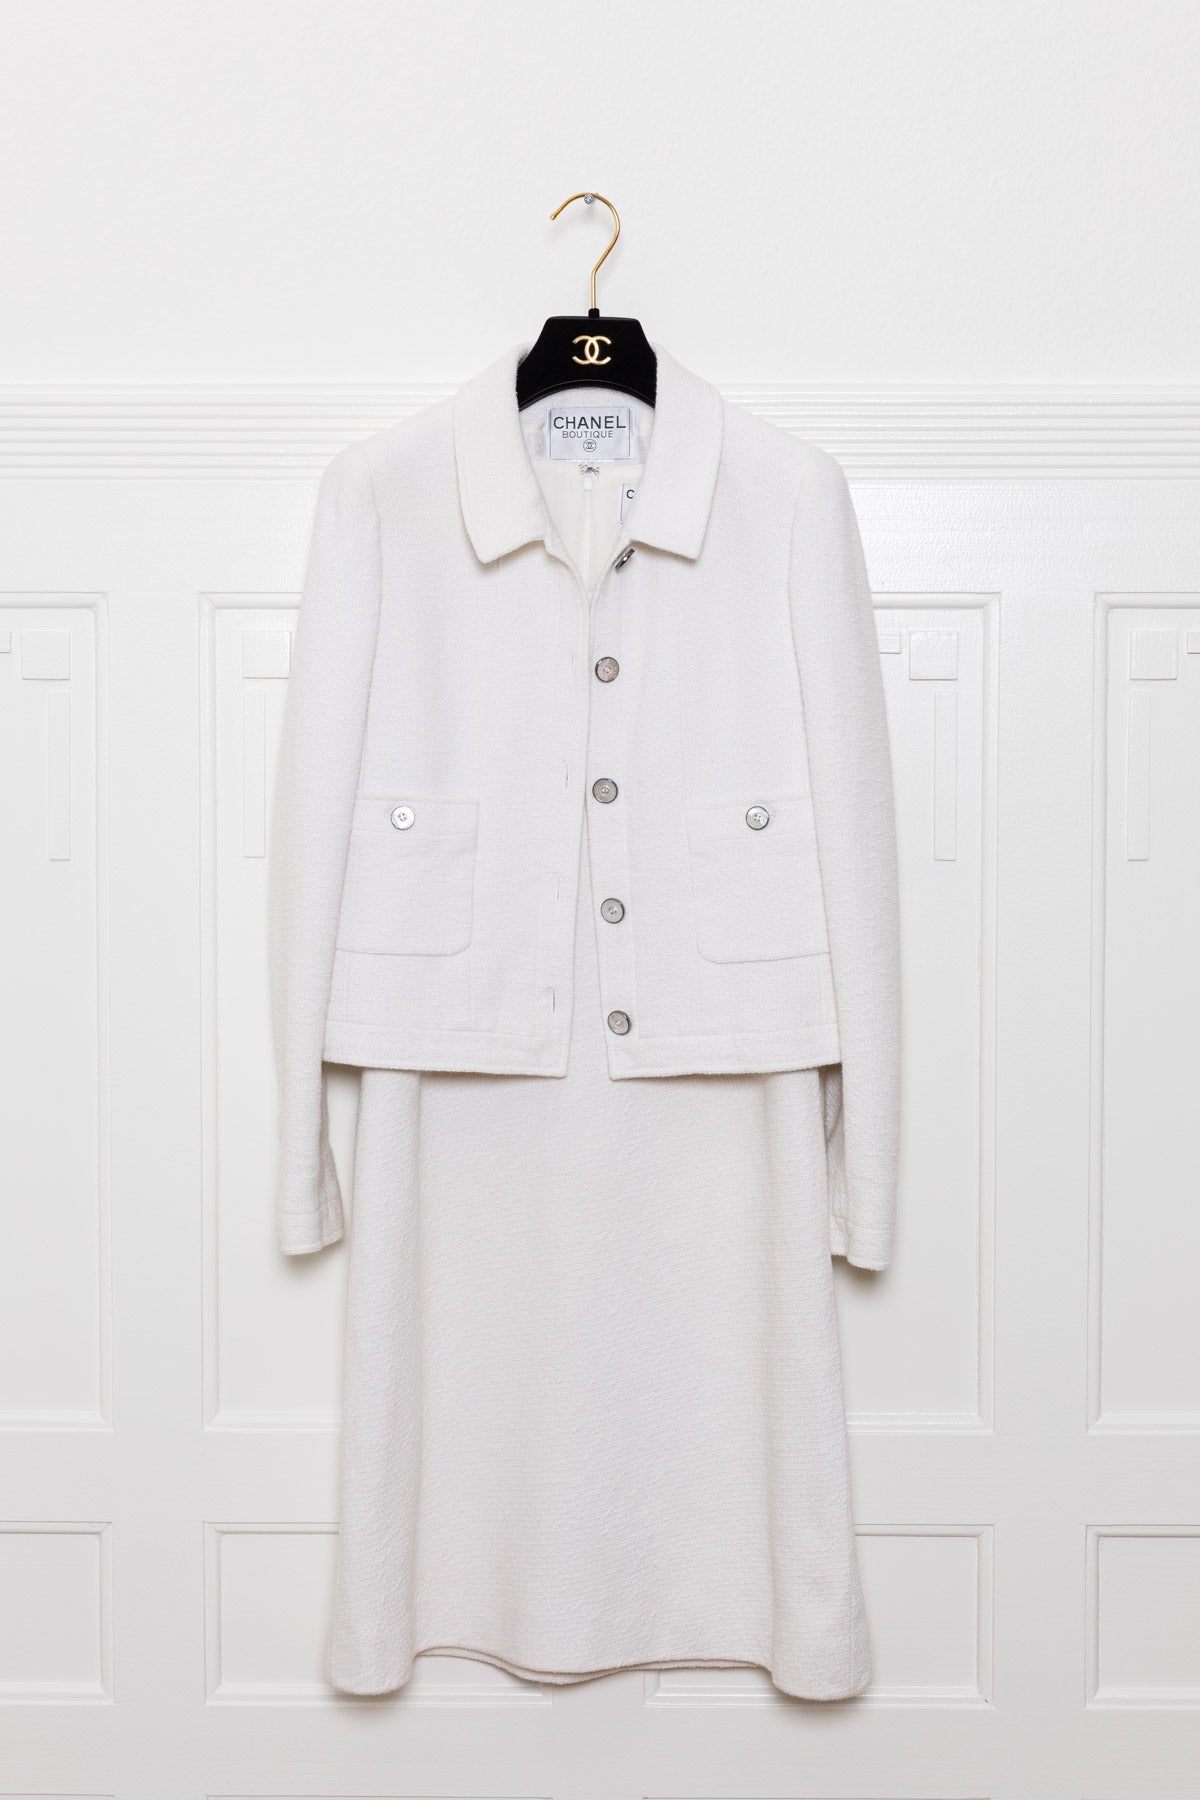 Chanel White suit SpringSummer 2012